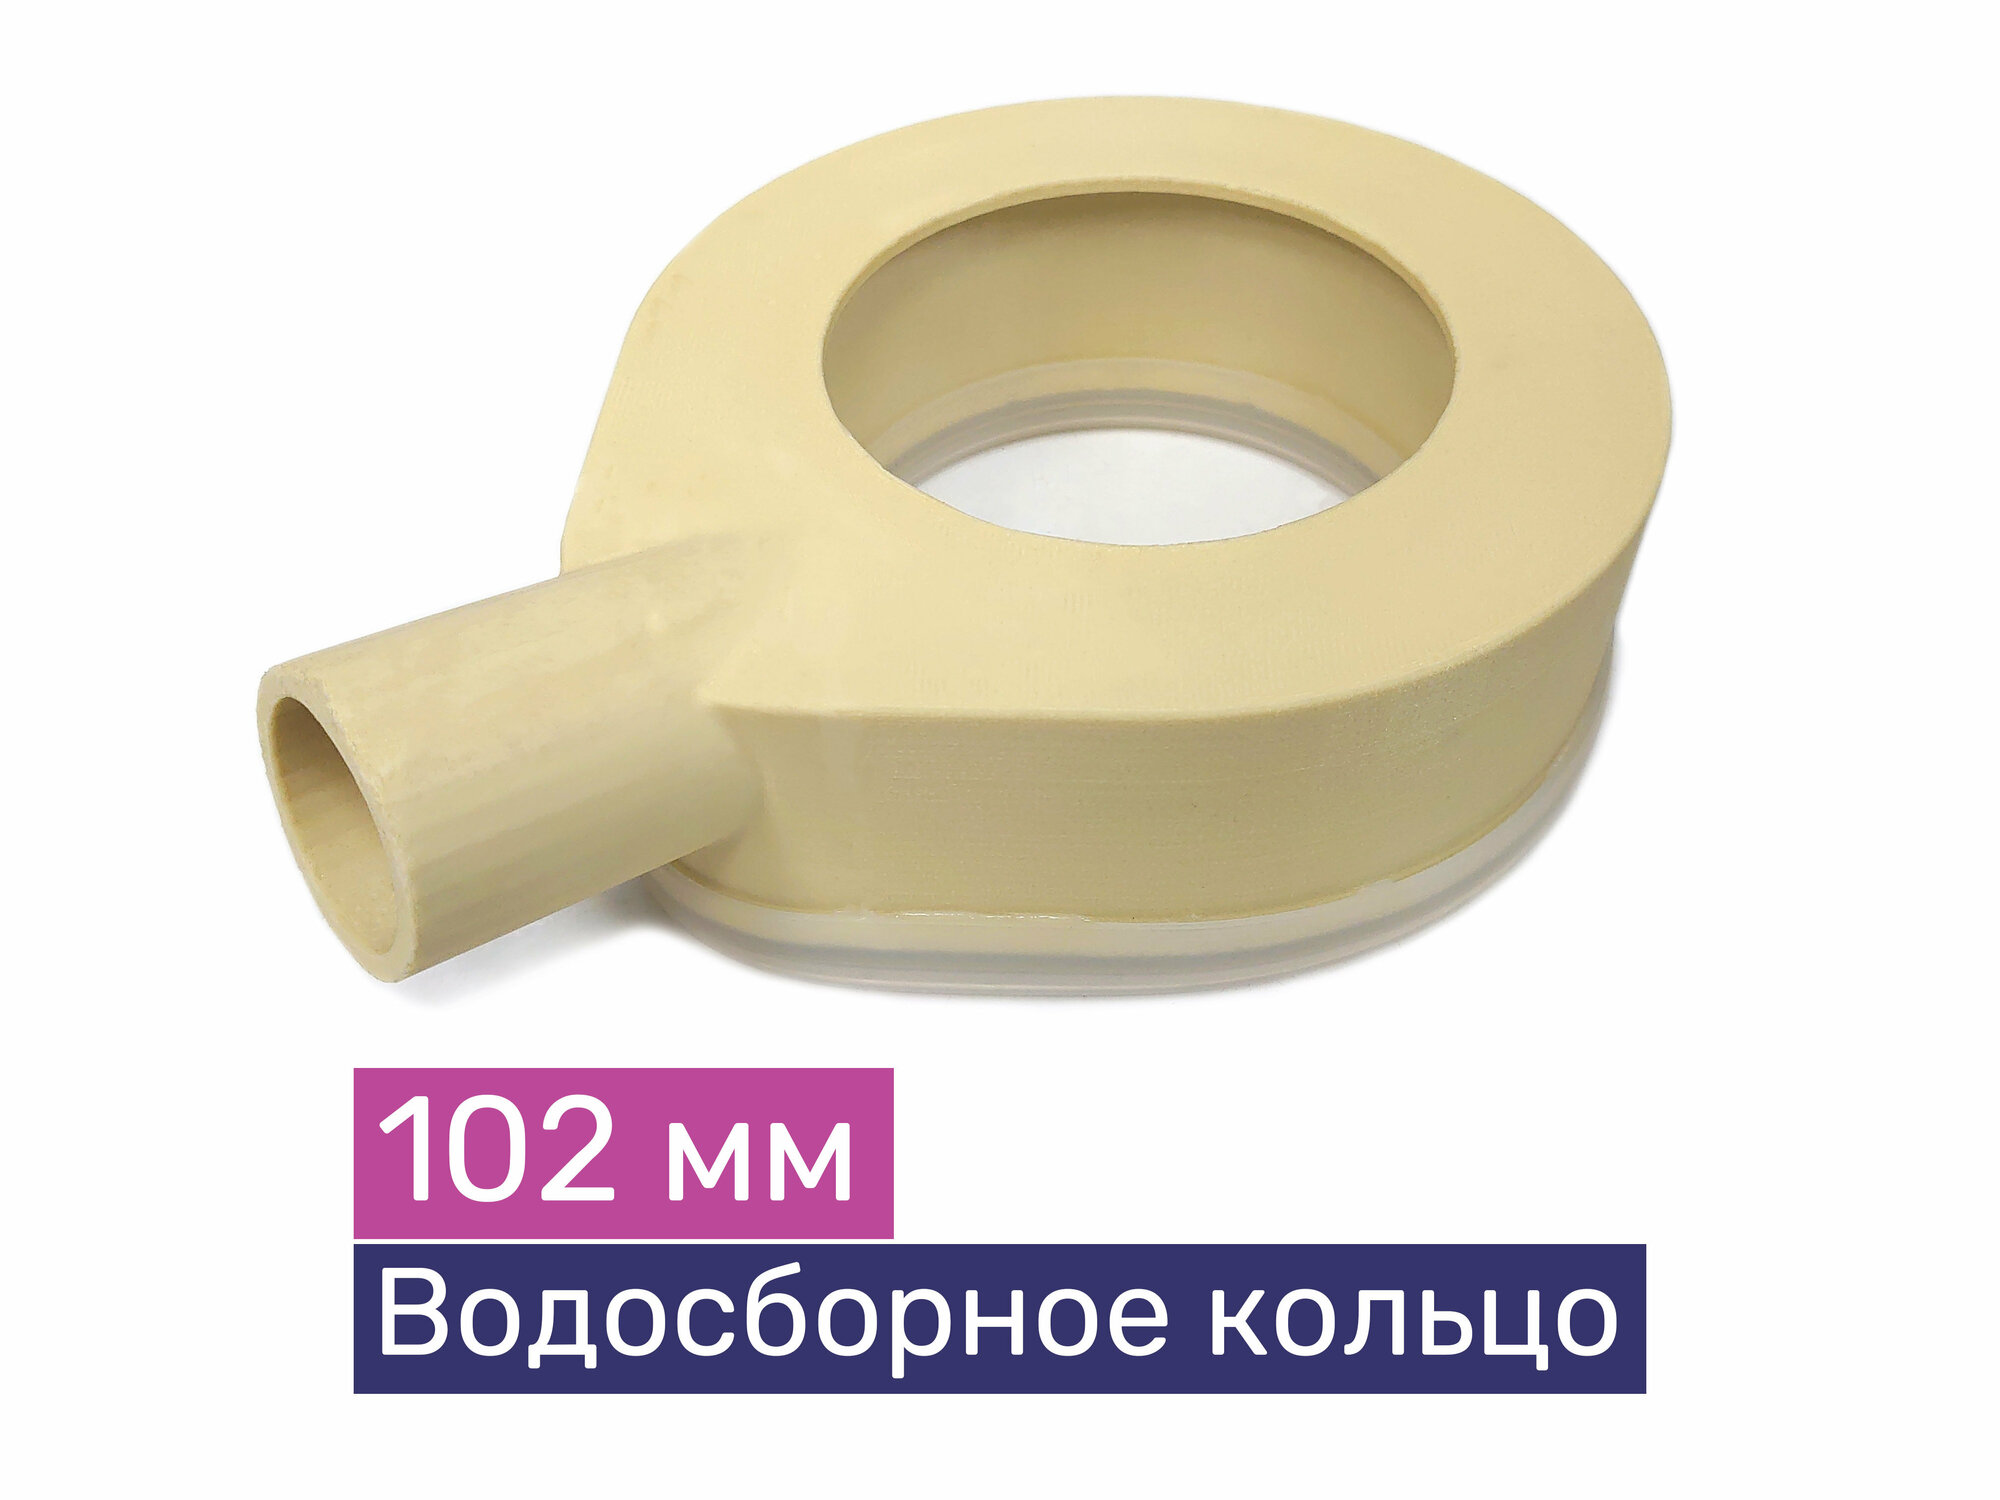 Водосборное кольцо для алмазного бурения ф102 мм Exla